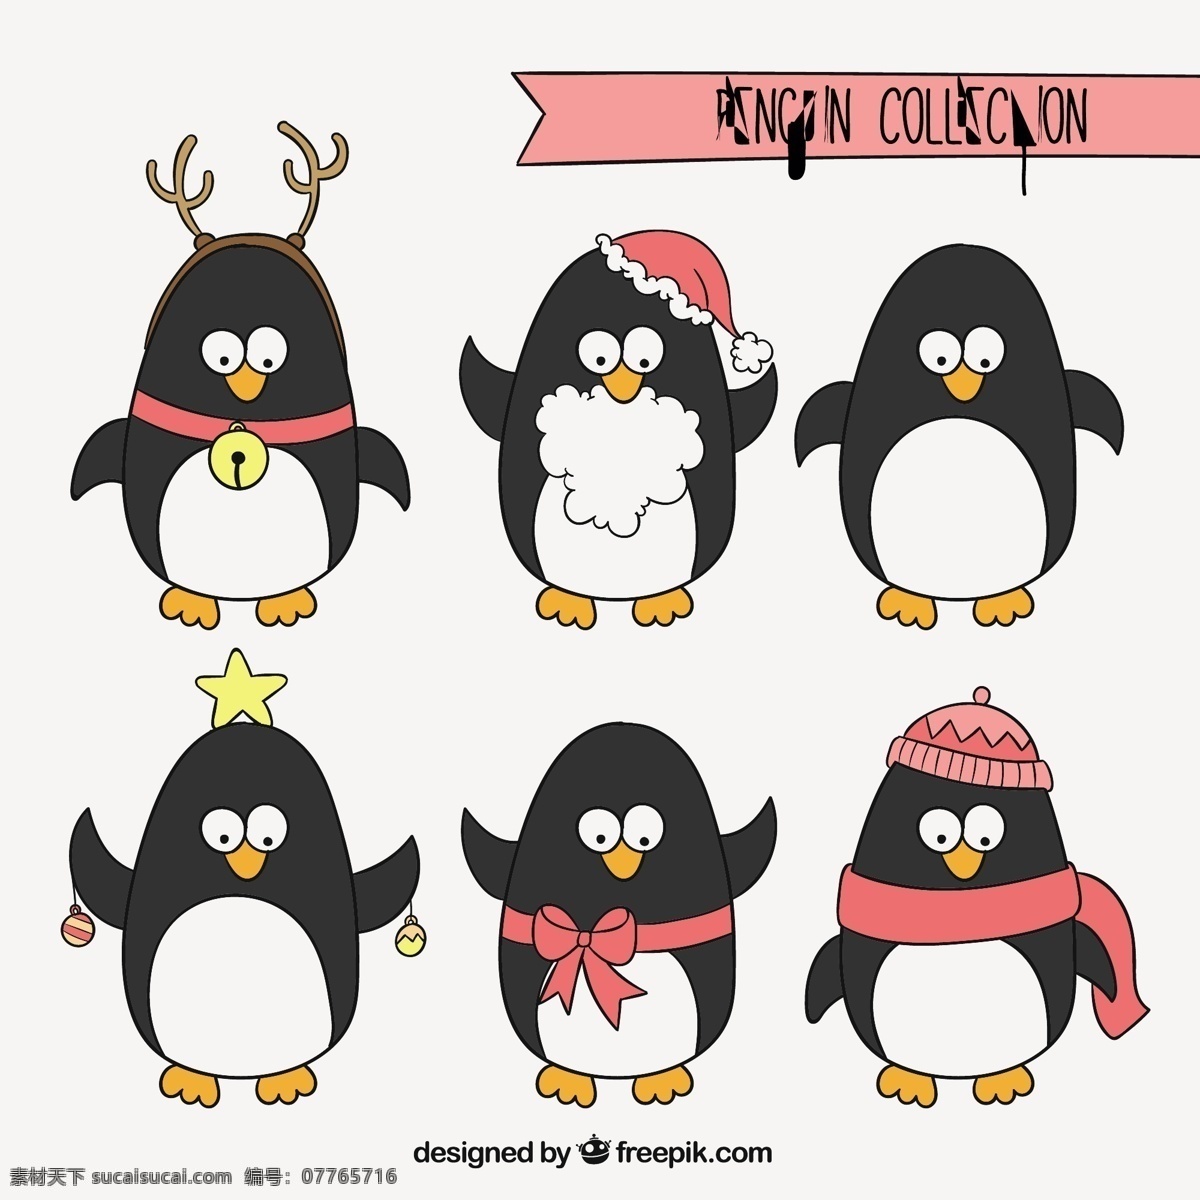 圣诞企鹅收集 圣诞 动物 卡通 冬季 快乐 颜色 性格 可爱 帽子 企鹅 卡通人物 圣诞帽 可爱的动物 卡通动物 集合 收藏 白色